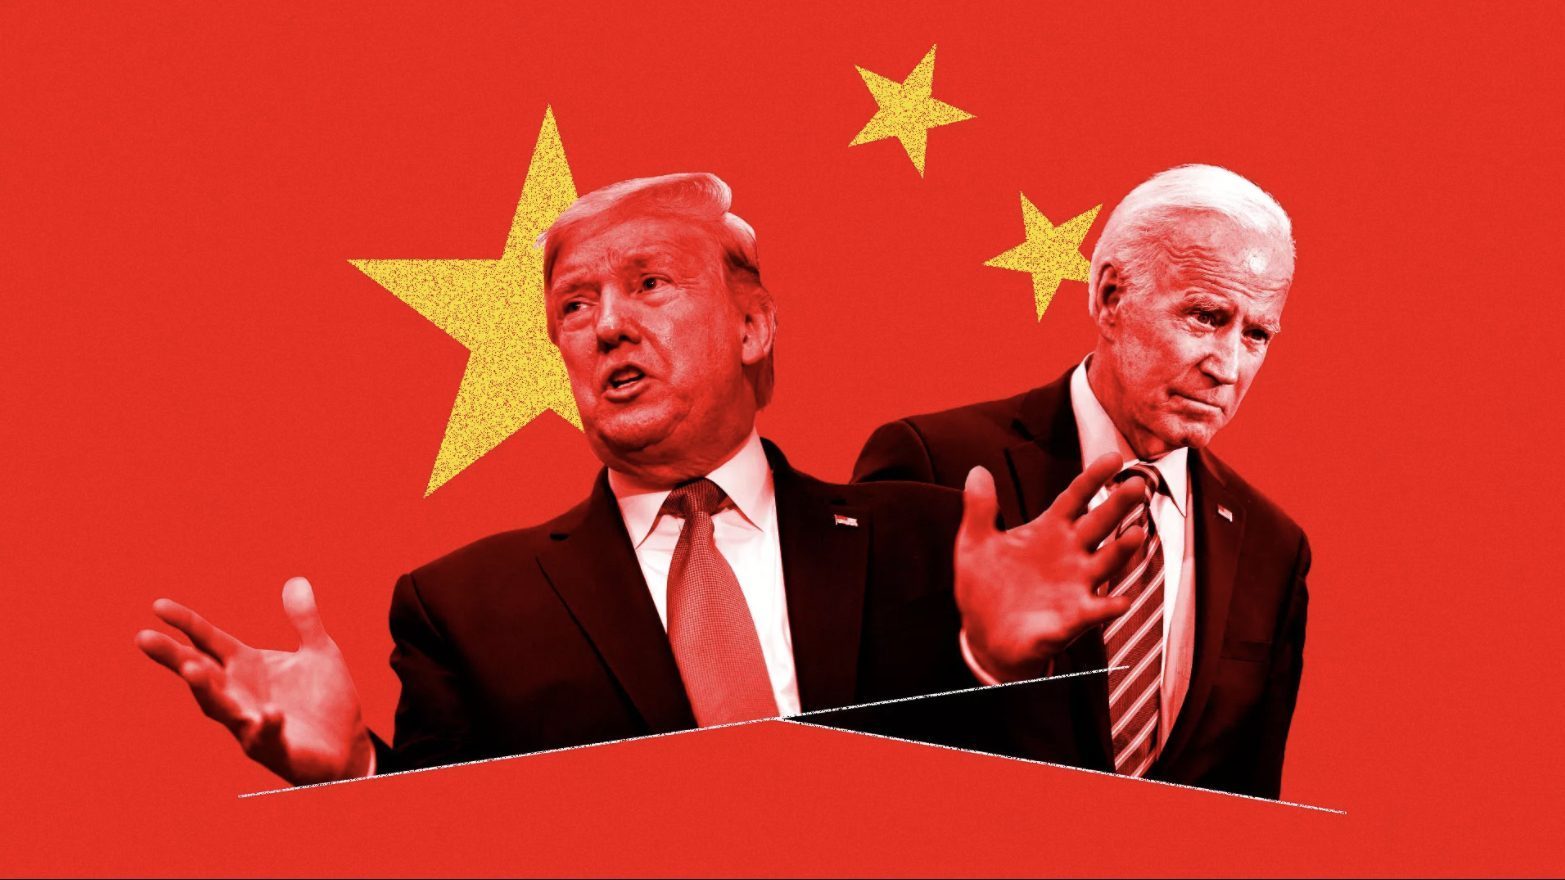 Trung Quốc chưa gửi lời chúc mừng chiến thắng của ông Biden khi chưa có kết quả bầu cử tổng thống Mỹ cuối cùng (ảnh: US Today)